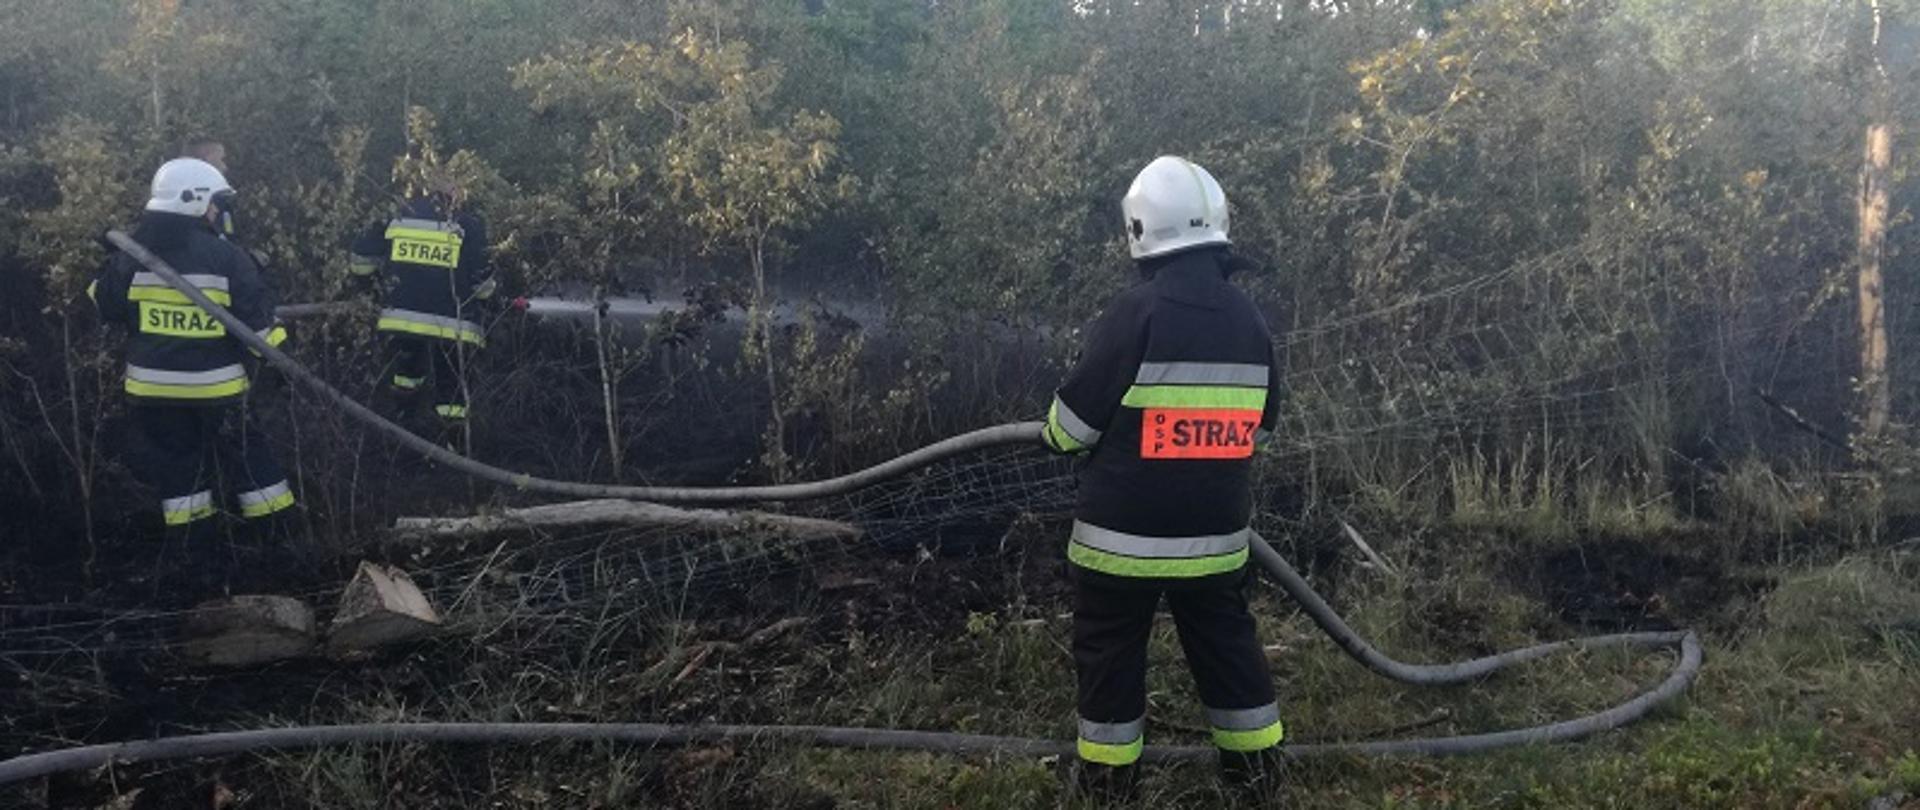 Pożar lasu w miejscowości Gruszewo. Zdjęcie przedstawia działania gaśnicze strażaków polegające na podawaniu wody na palący się młodnik. Strażacy w umundurowaniu specjalnym i hełmach